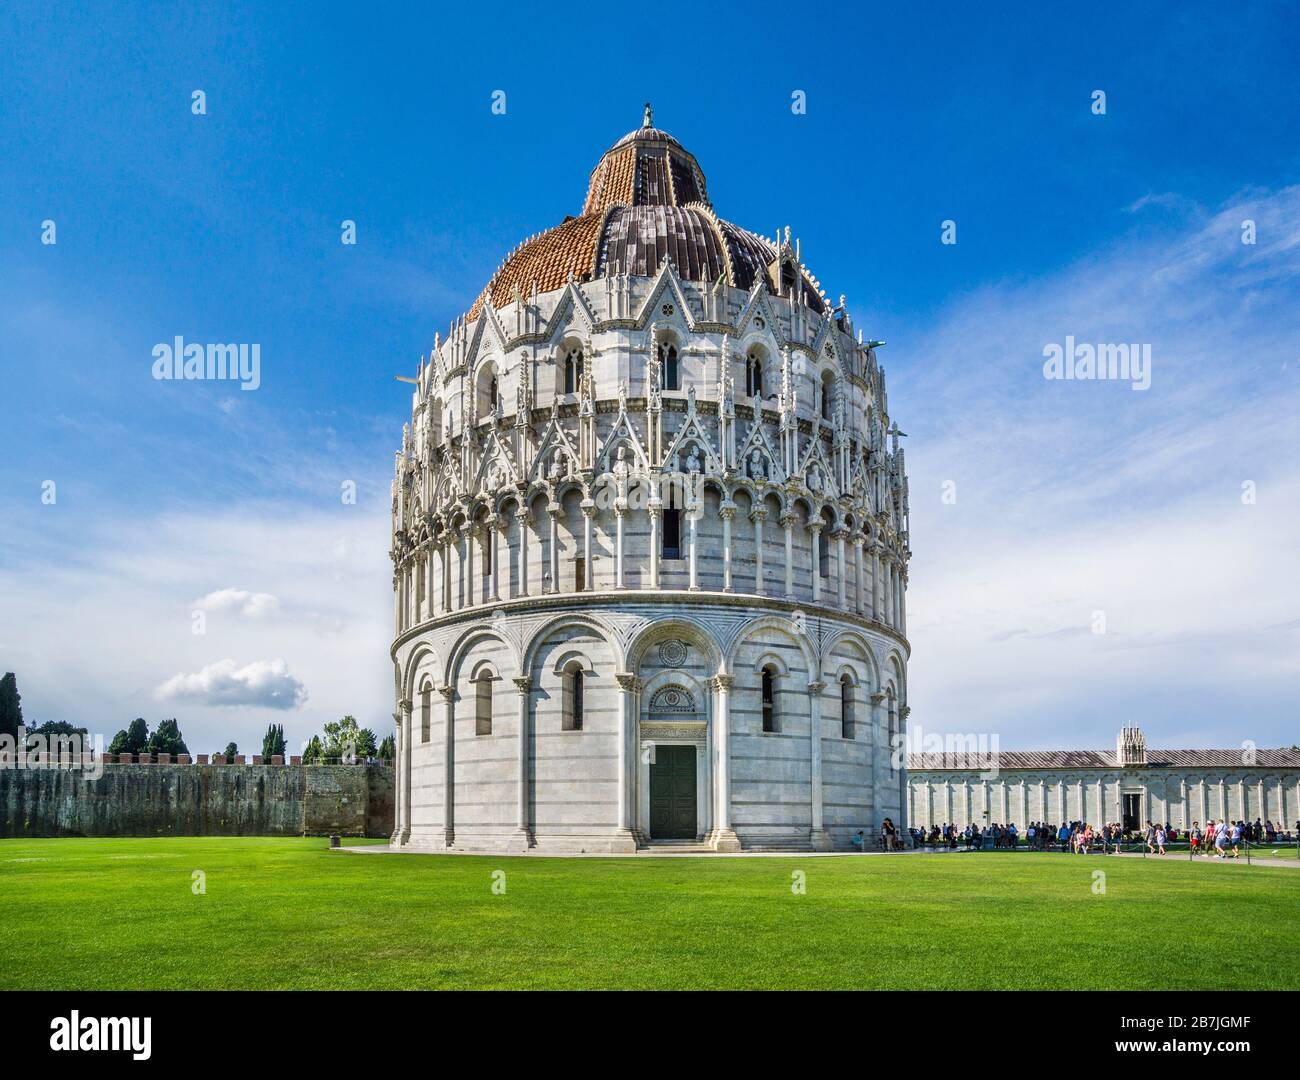 Das Pisa-Baptisterium des heiligen Johannes auf der Piazza dei Miracoli, in der Nähe des Duomo di Pisa und des freistehenden campanile der Kathedrale, des berühmten Schiefen Tow Stockfoto